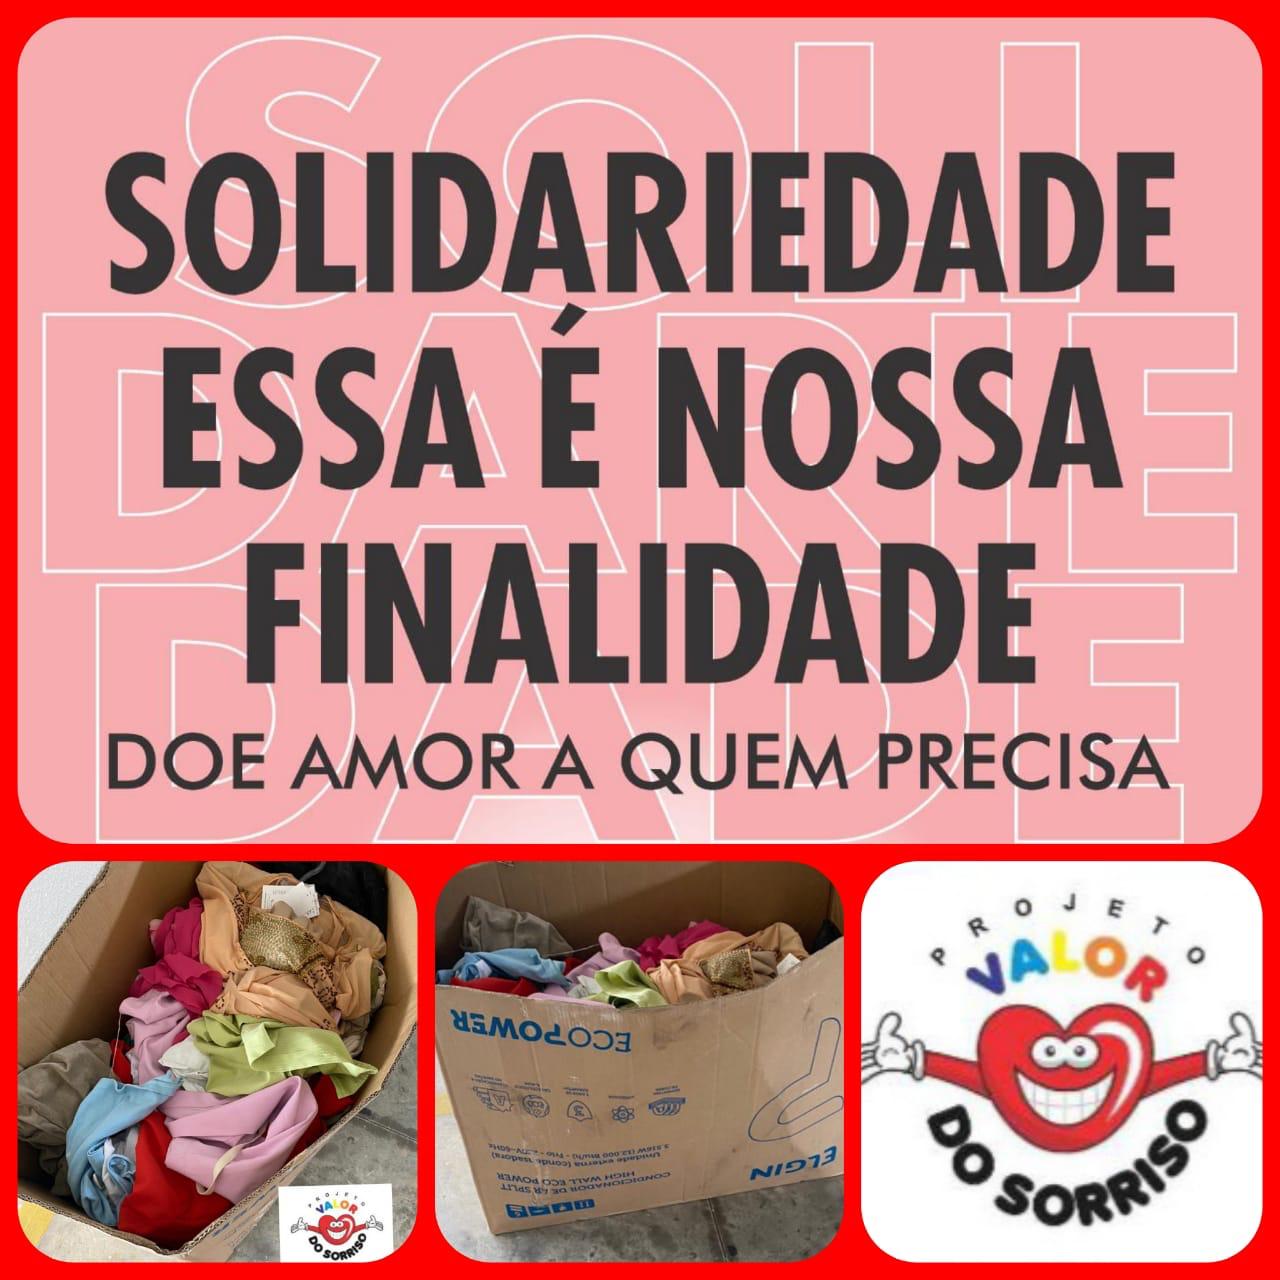 WhatsApp Image 2021 04 04 at 09.29.09 1 - 'VALOR DO SORRISO': campanha arrecada alimentos e donativos para população vulnerável na pandemia